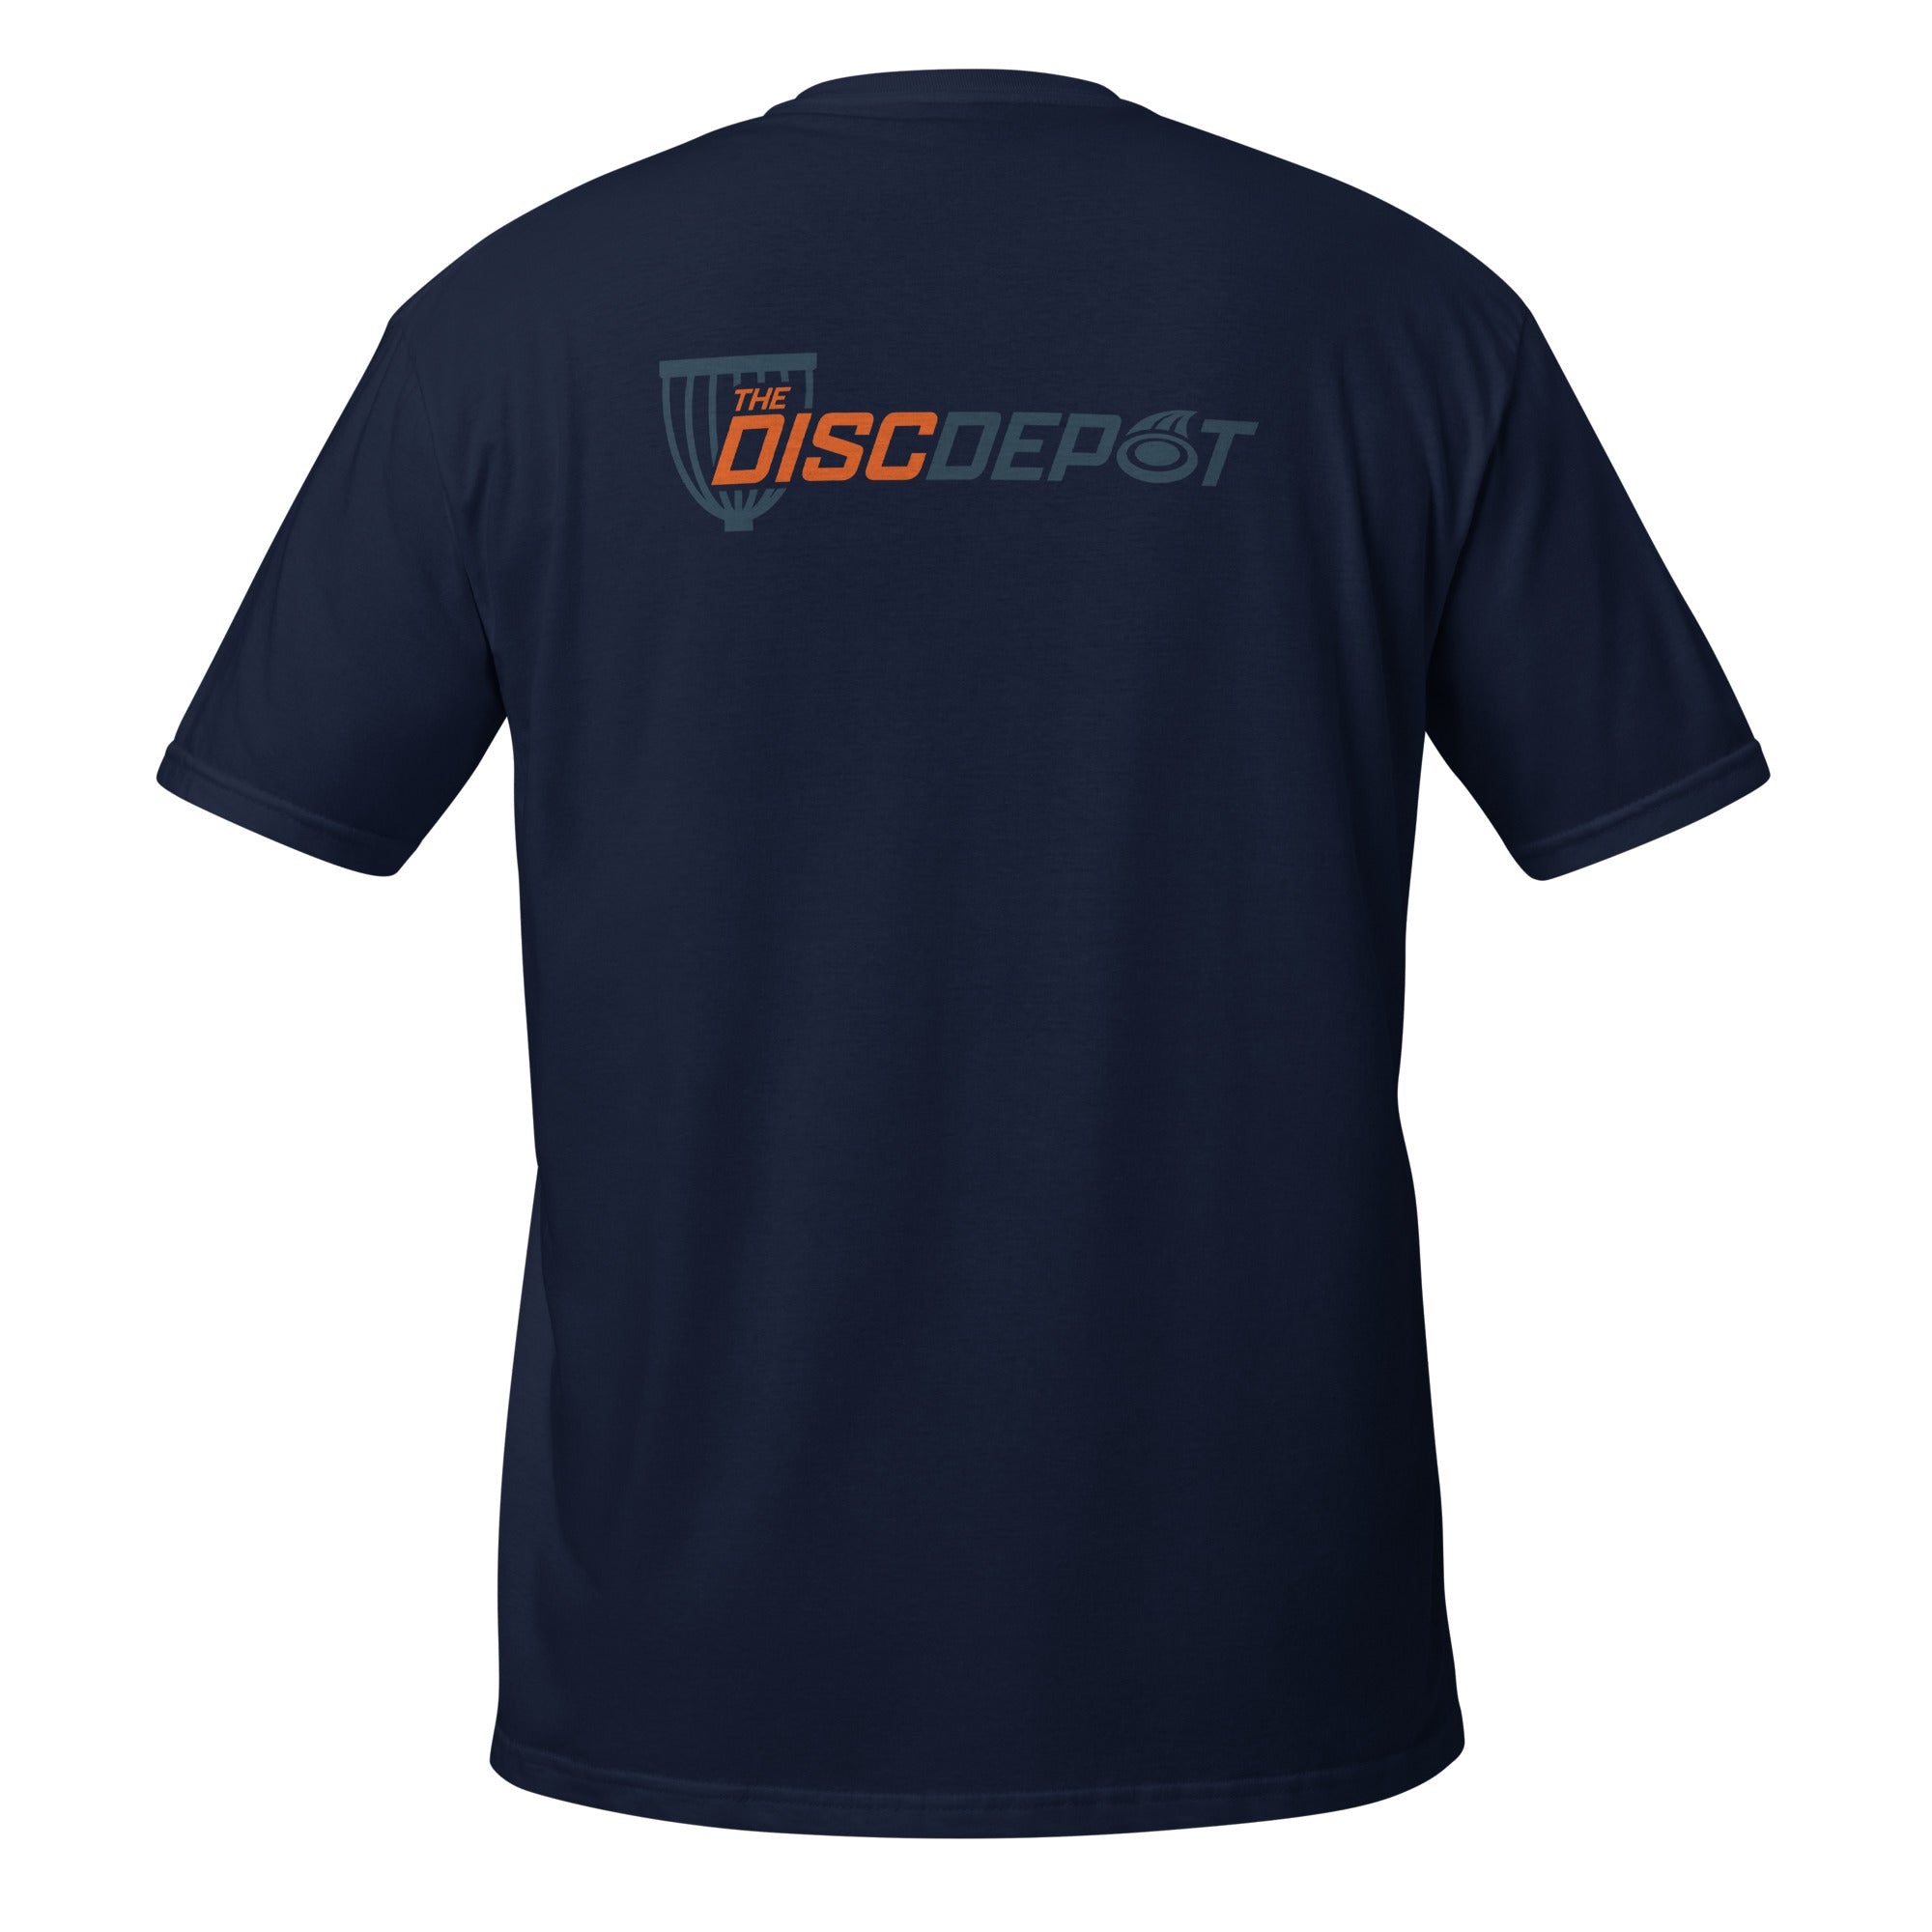 The Disc Depot Short-Sleeve Unisex T-Shirt